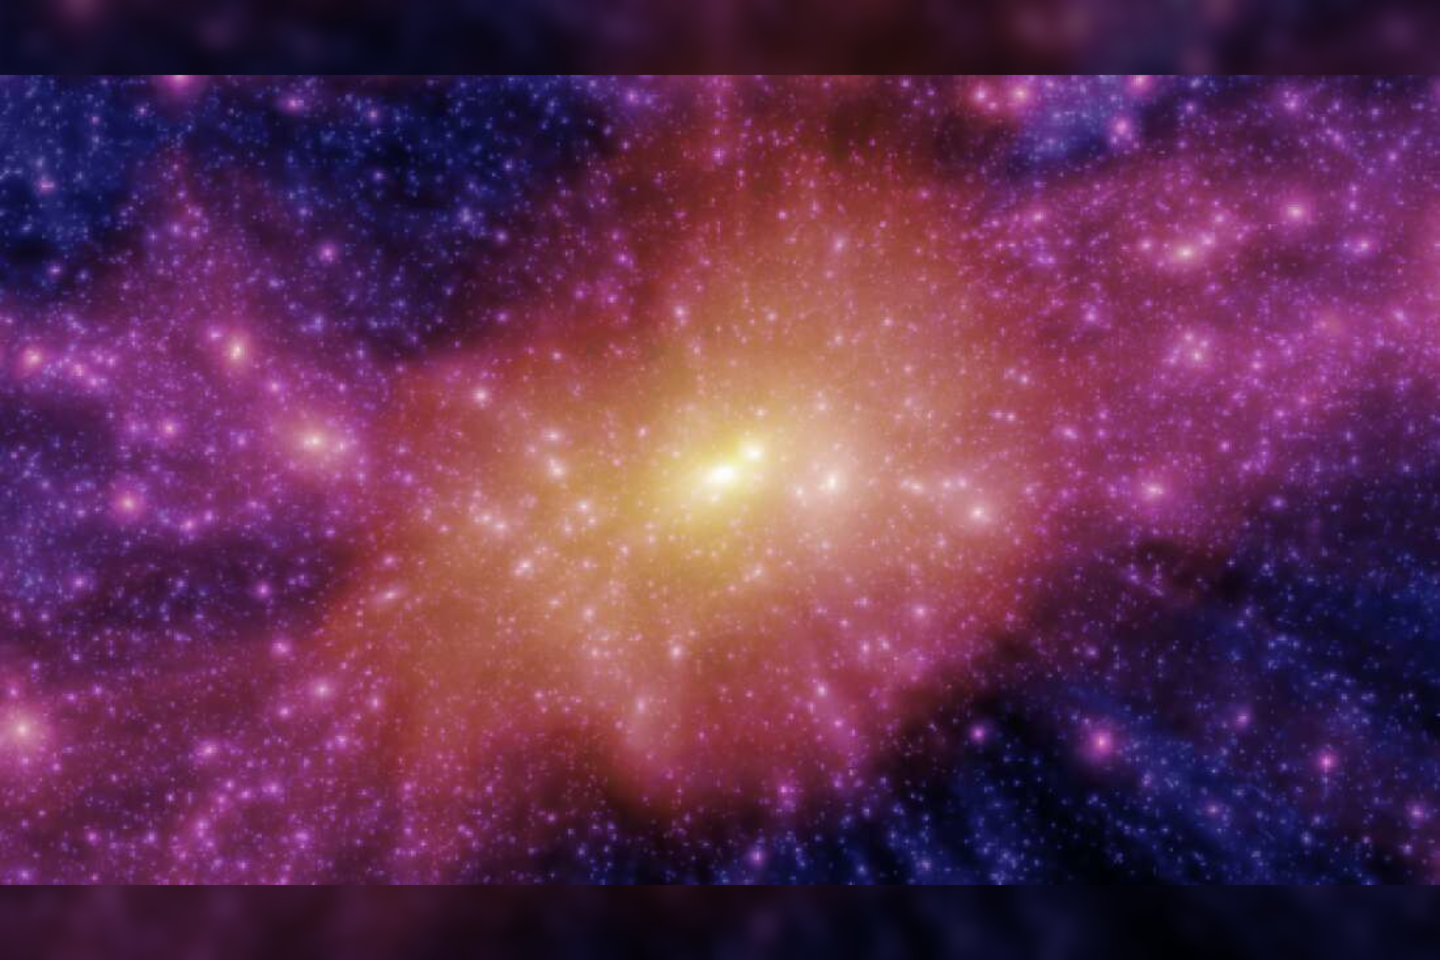   Mergelės galaktikų spiečius.<br> Stuarto McAlpine'o nuotr.